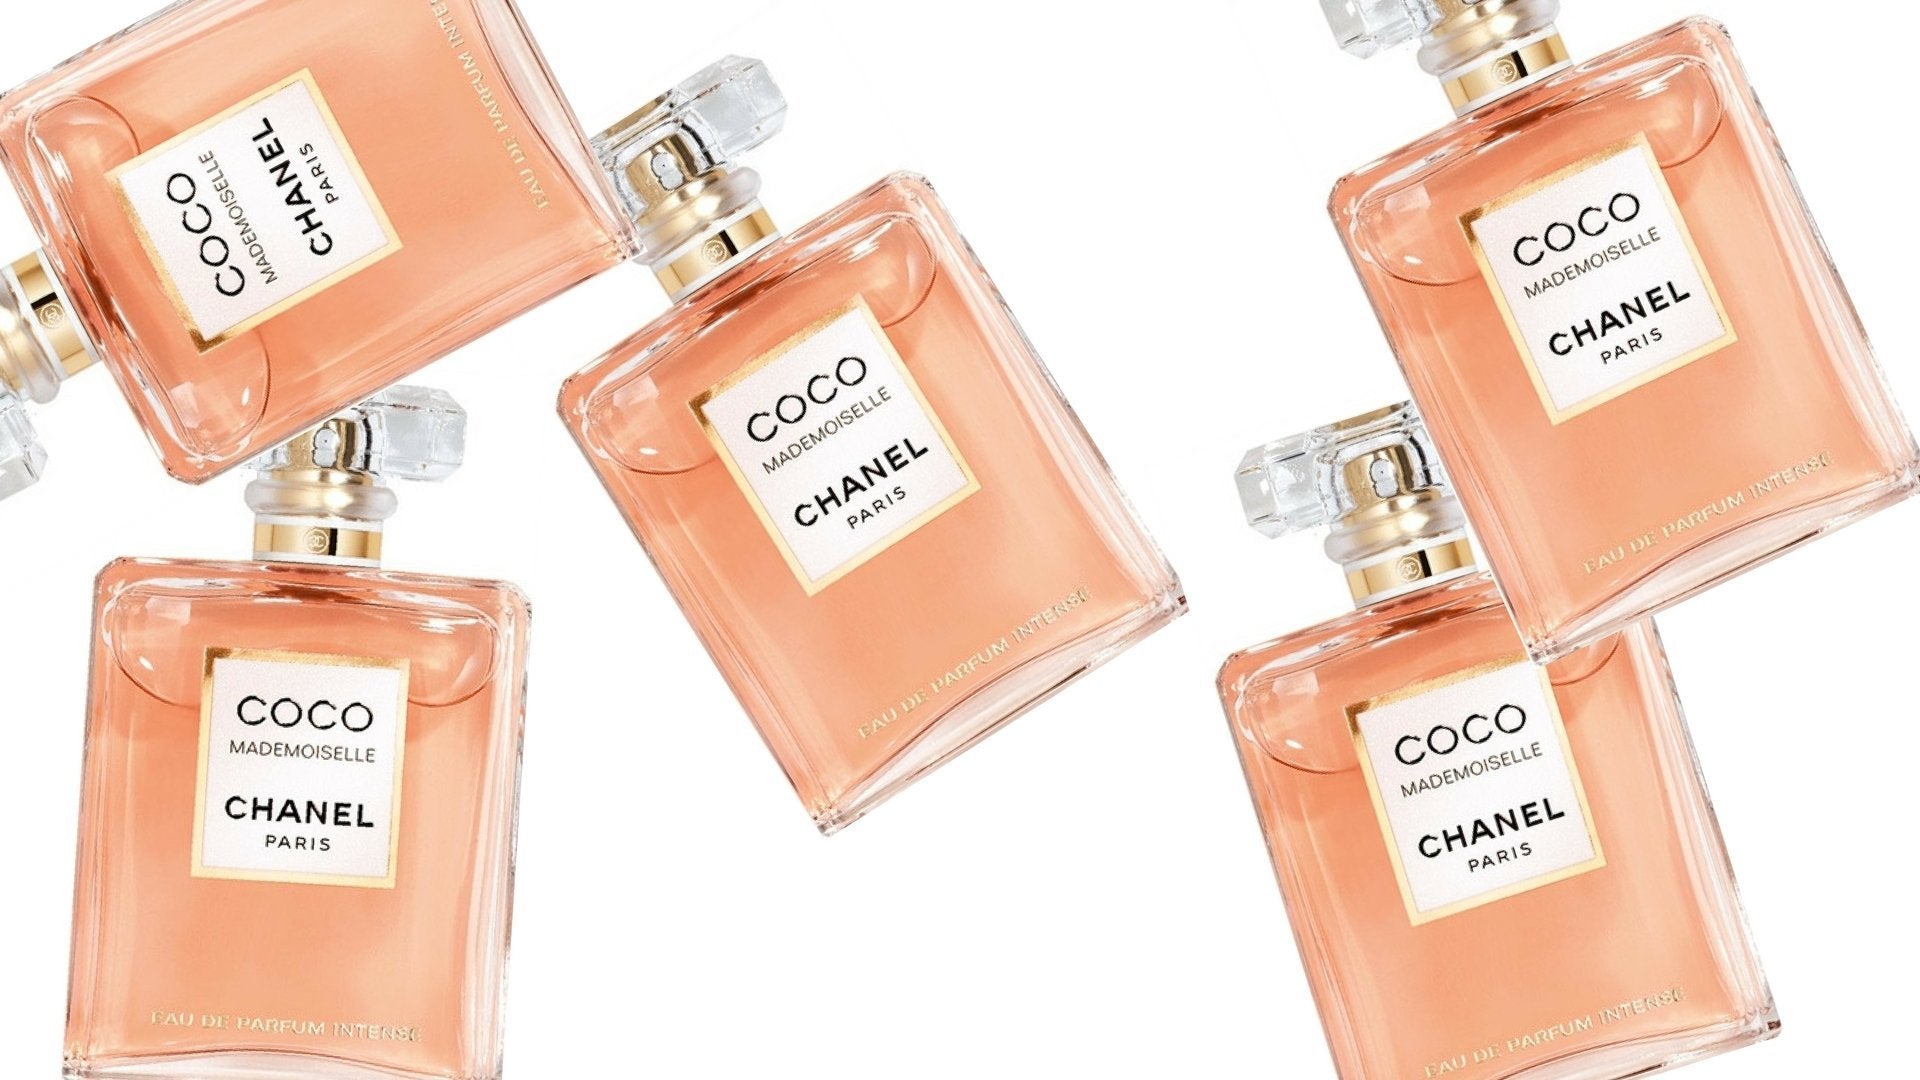 CHANEL Mademoiselle Review: Australia's Best Fragrance?